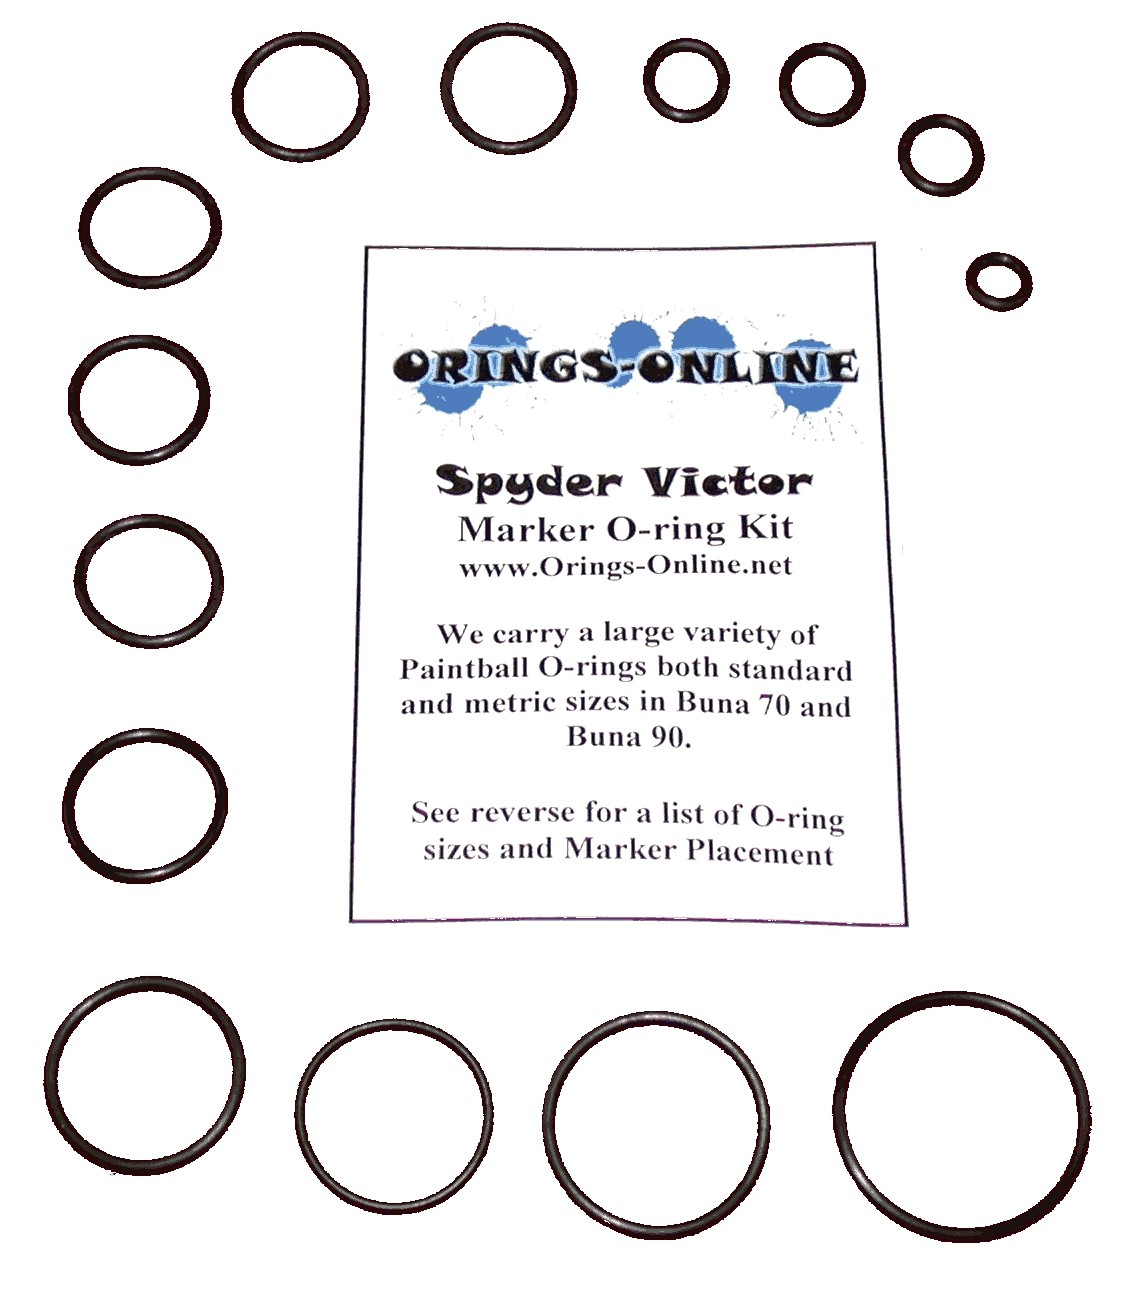 Spyder Victor O-ring Kit